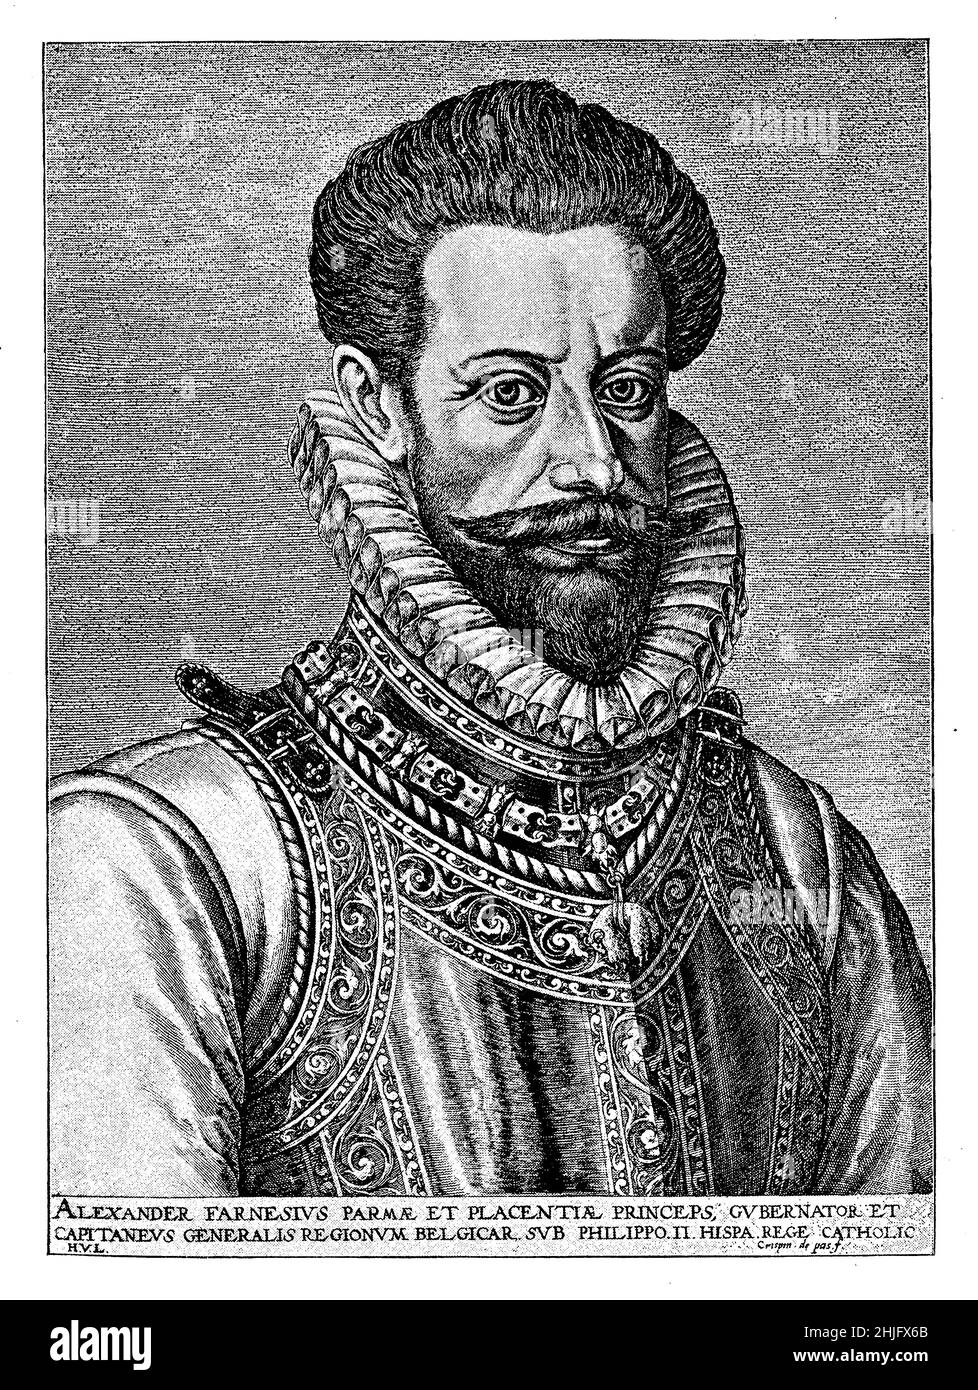 Ritratto di Alessandro Farnese (1545 - 1592) Duca di Parma, Piacenza e Castro, nobile italiano, generale dell'esercito spagnolo e governatore dei Paesi Bassi spagnoli Foto Stock